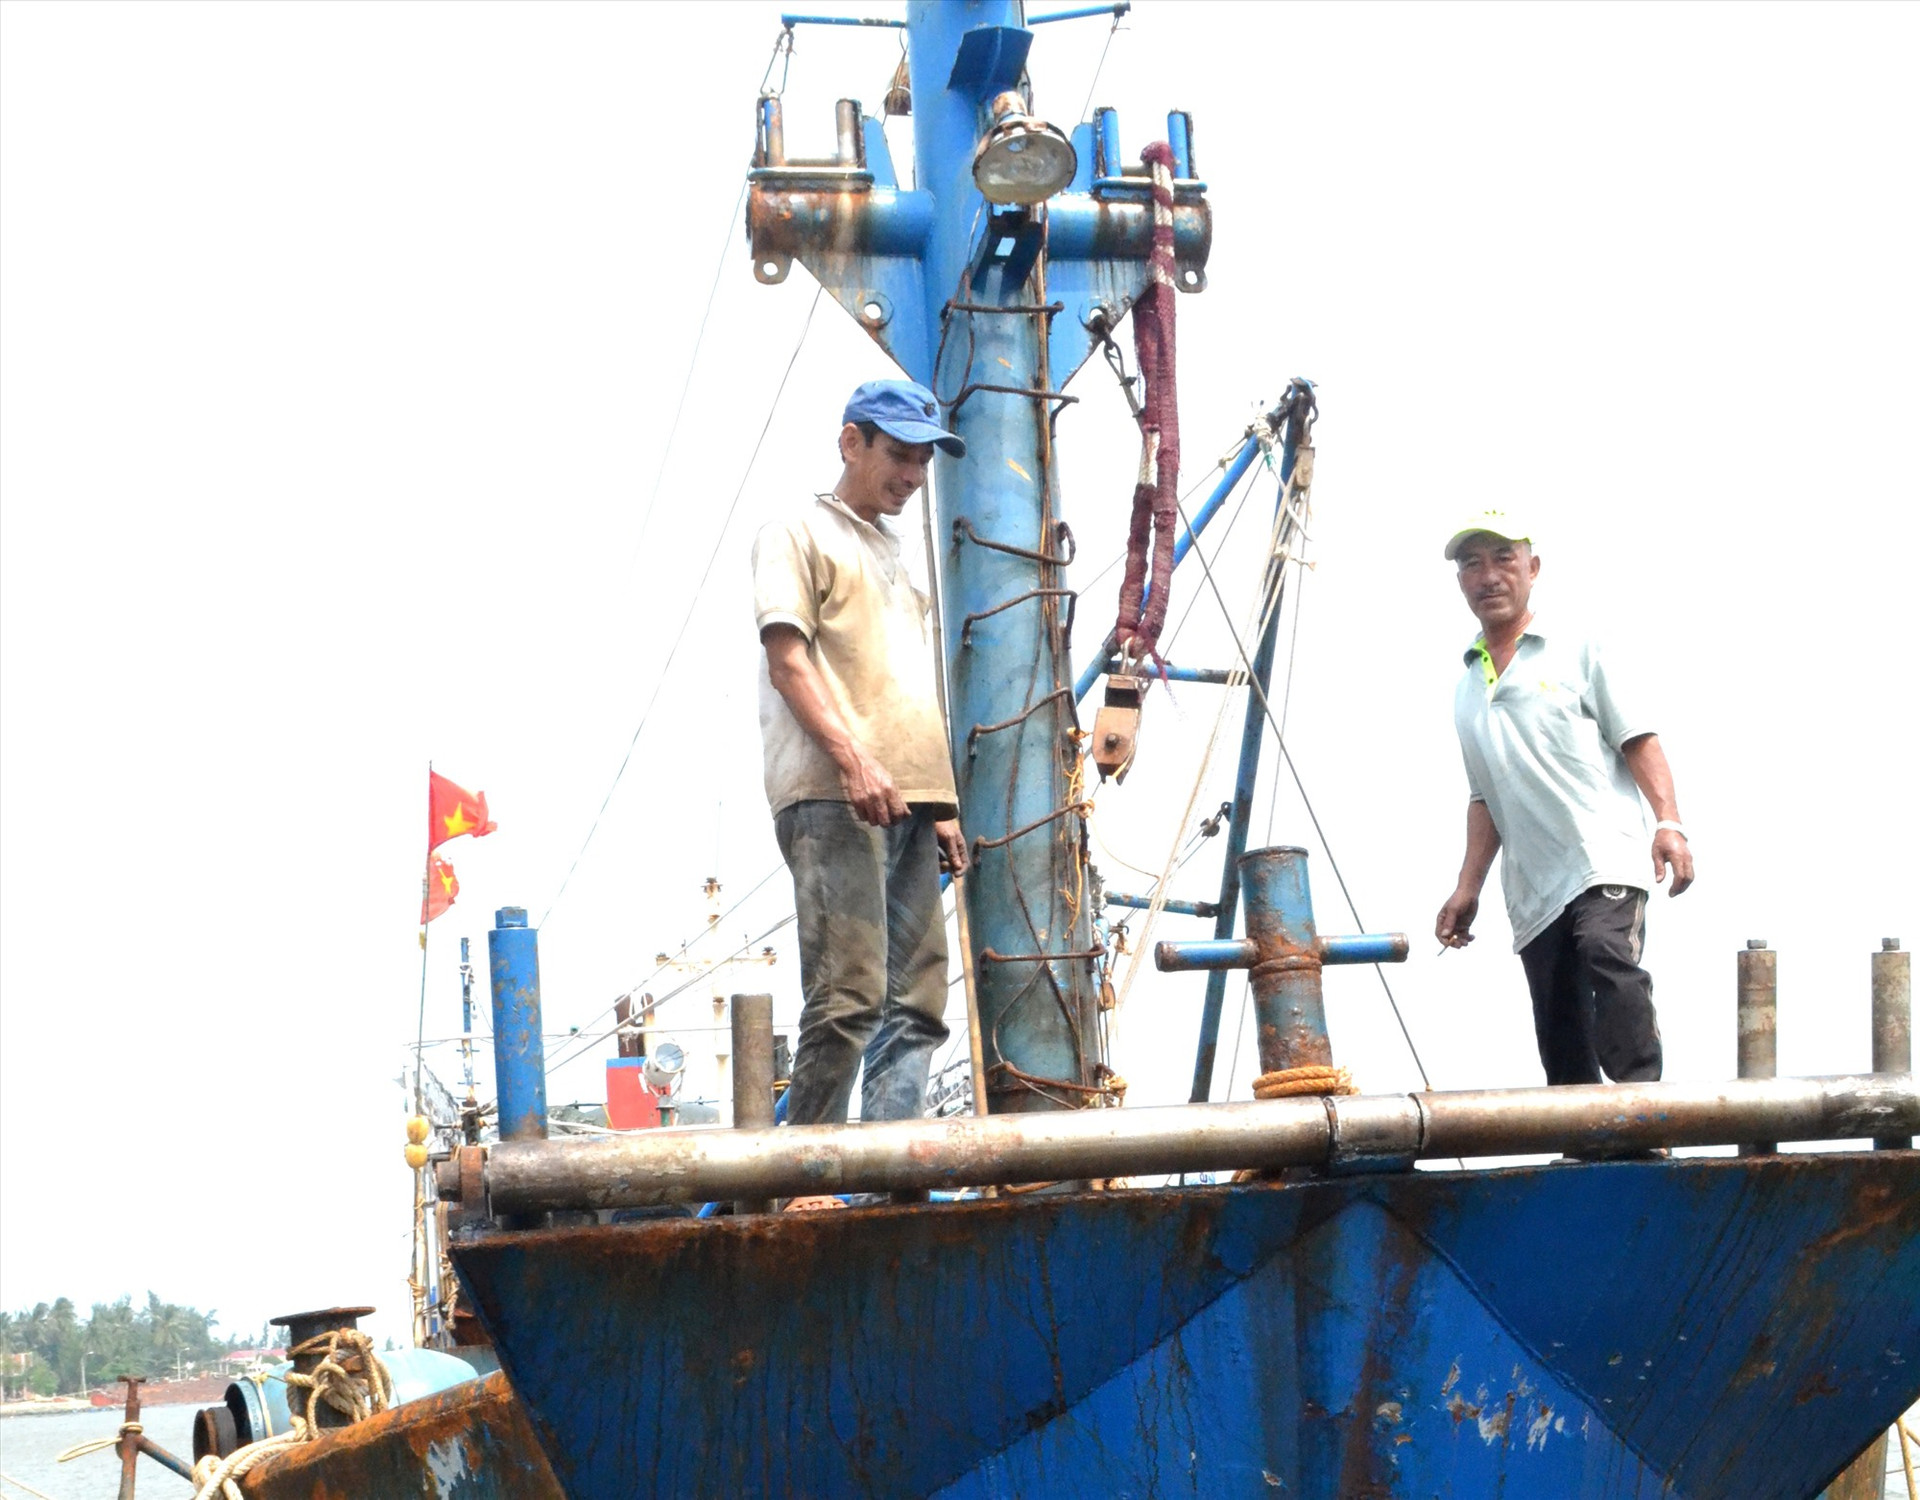 Làm ăn khó khăn, tàu cá của anh Nguyễn Thanh Tiến cải hoán từ nghề lưới chụp sang lưới vây để tiếp tục bám biển. Ảnh: VIỆT NGUYỄN